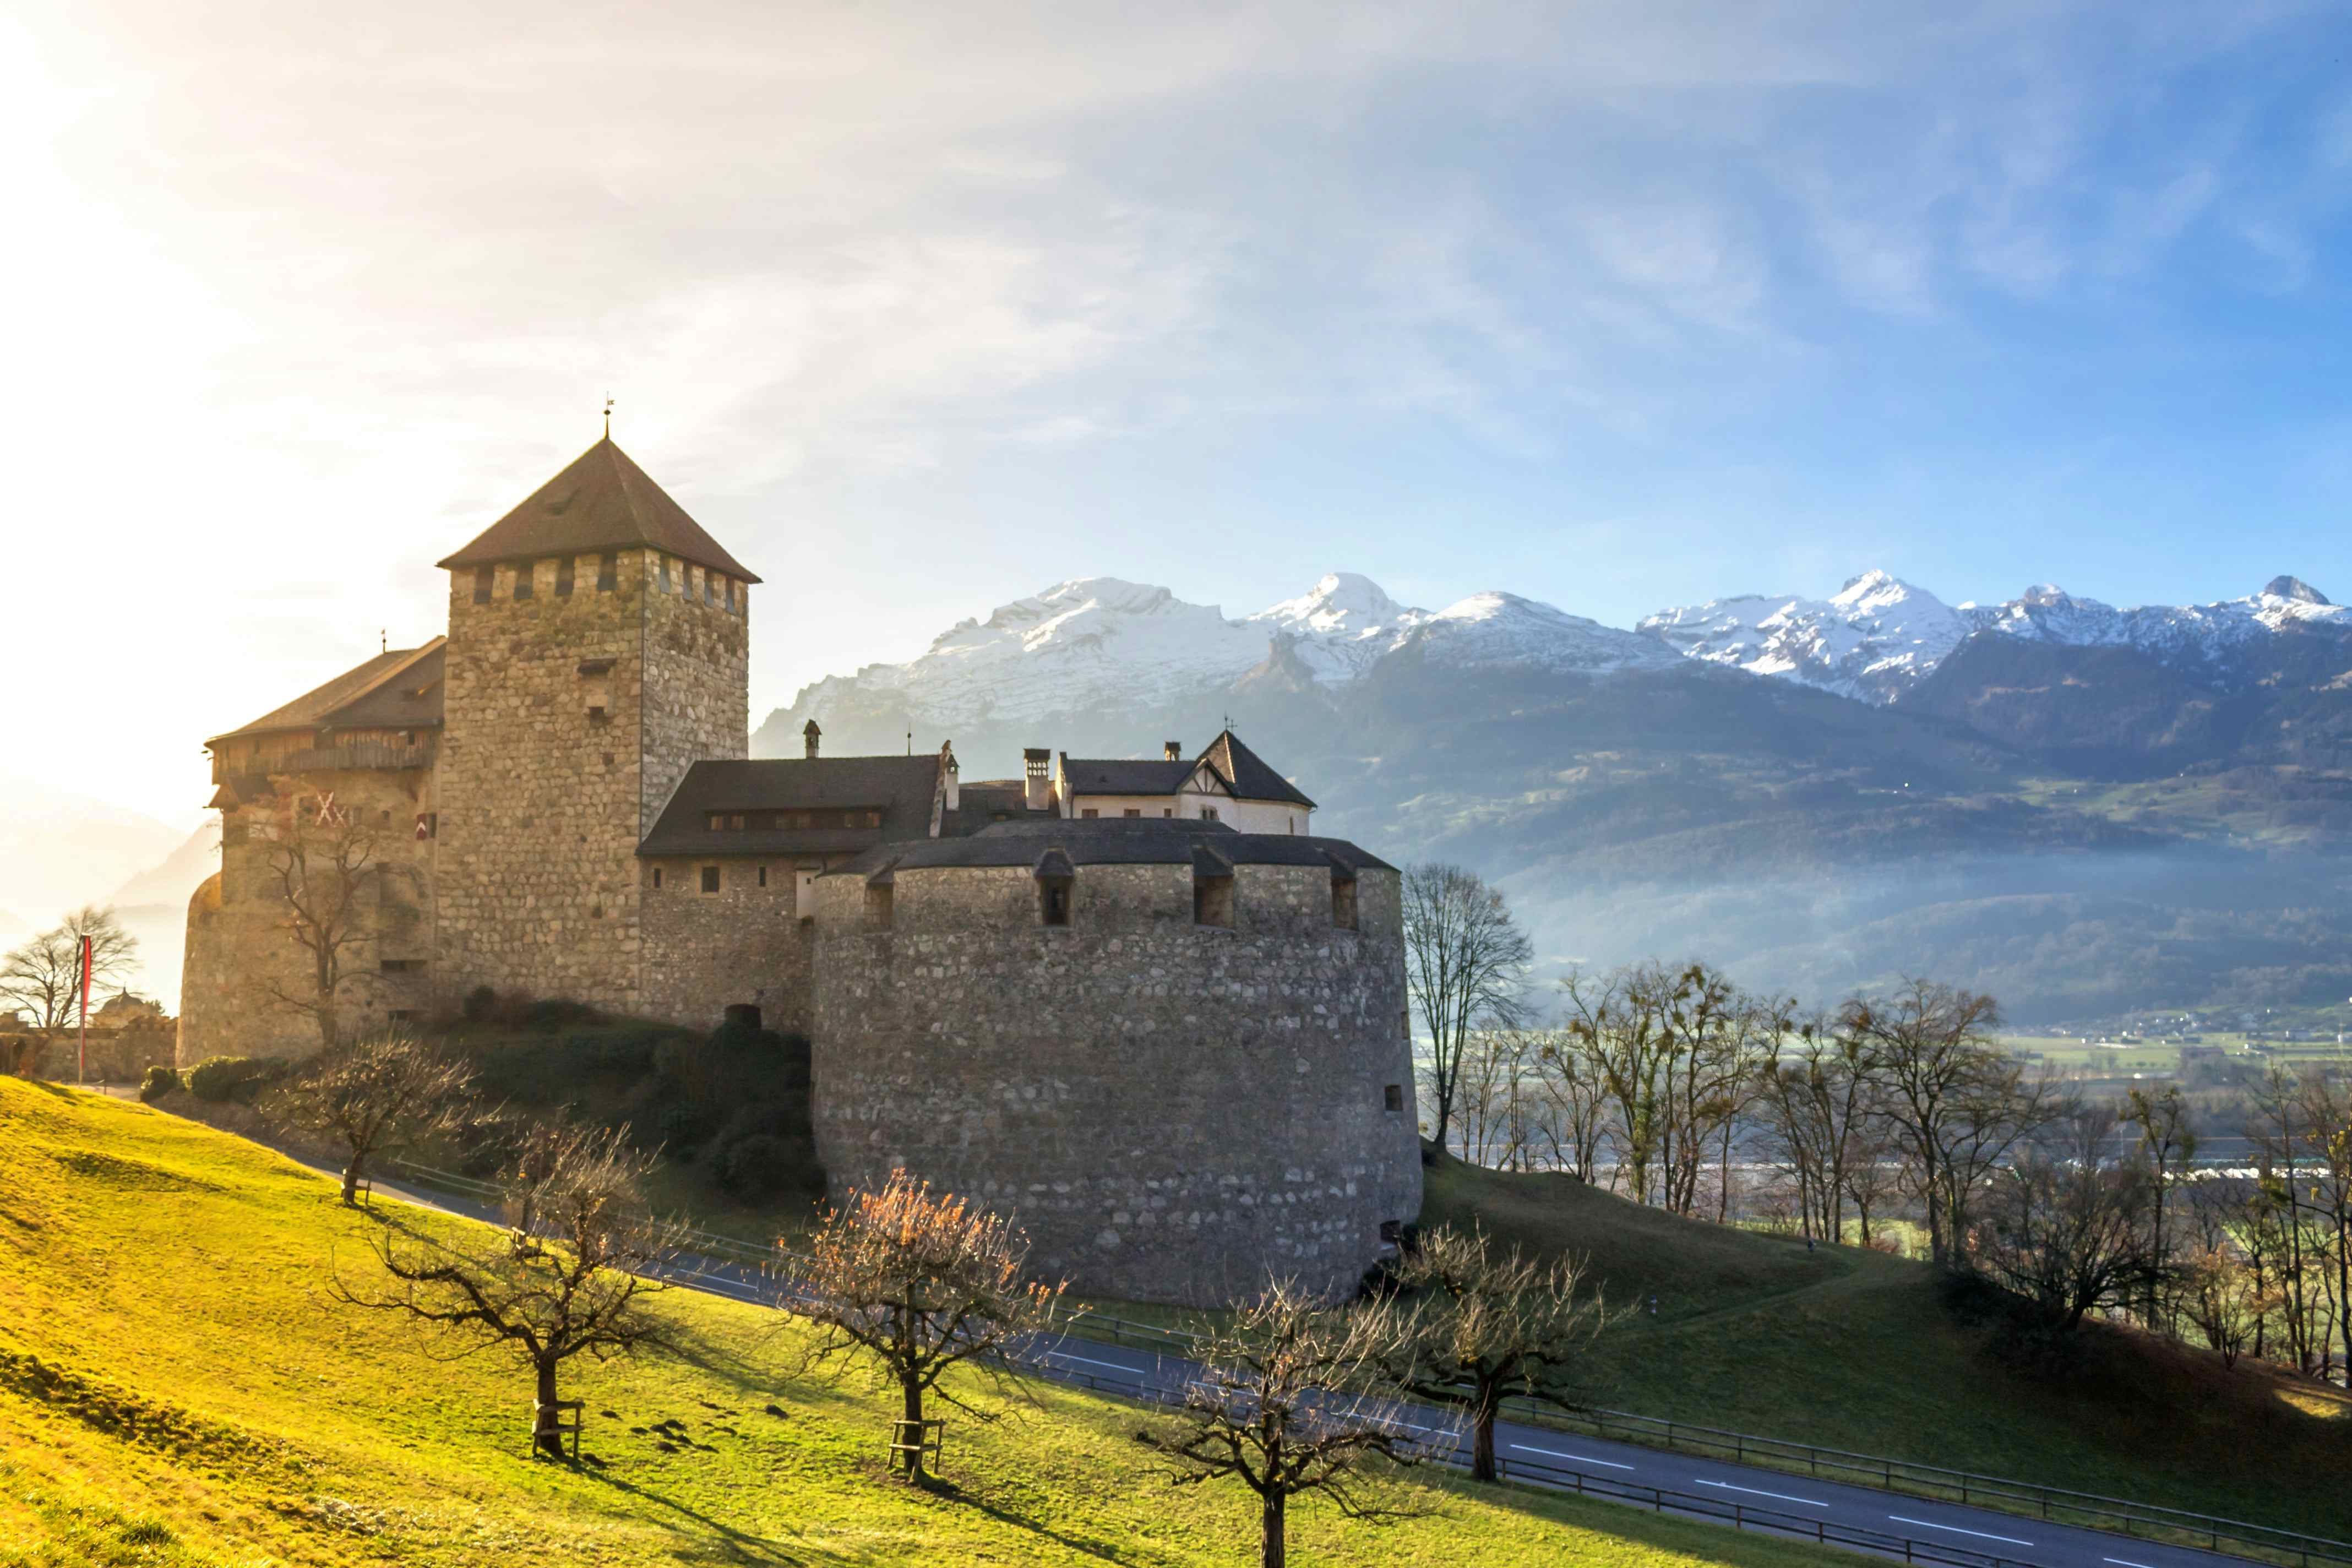 Camping in Liechtenstein